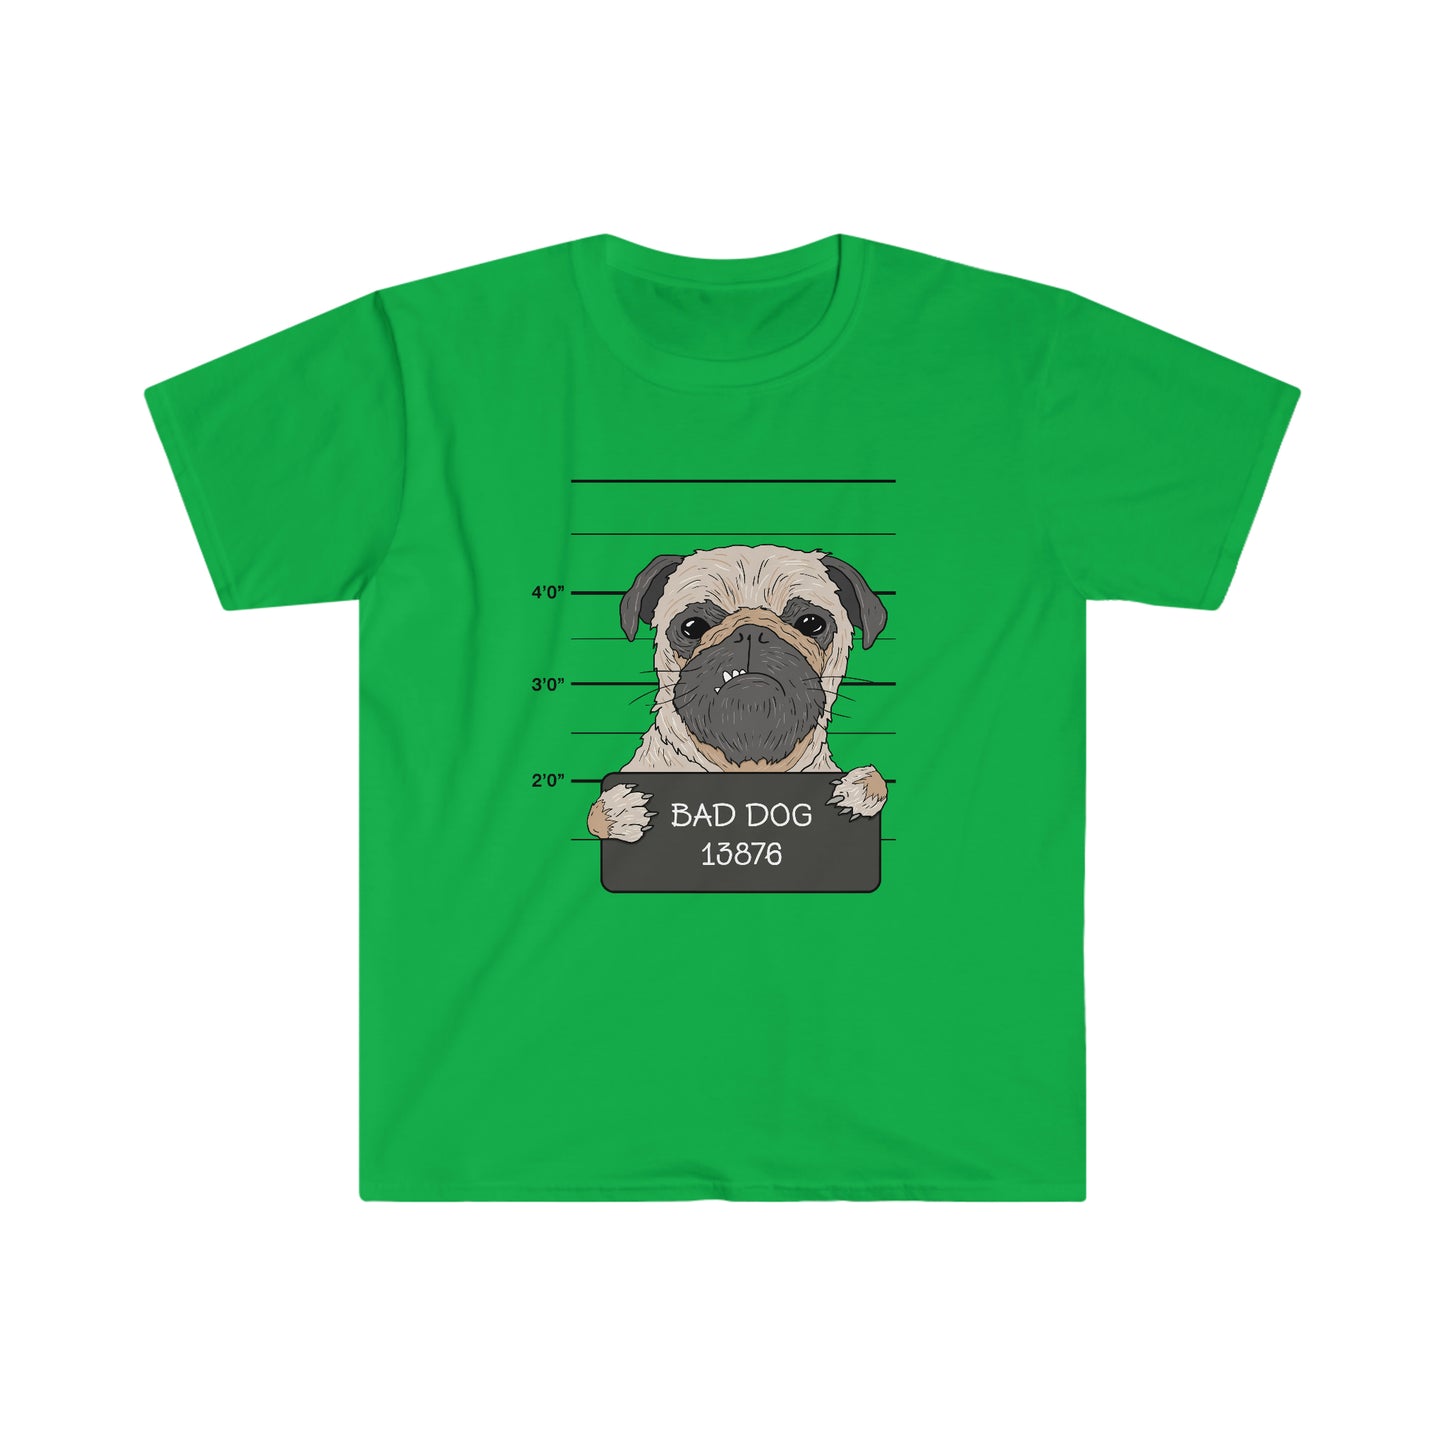 Bad Dog Pugshot - Unisex Softstyle T-Shirt